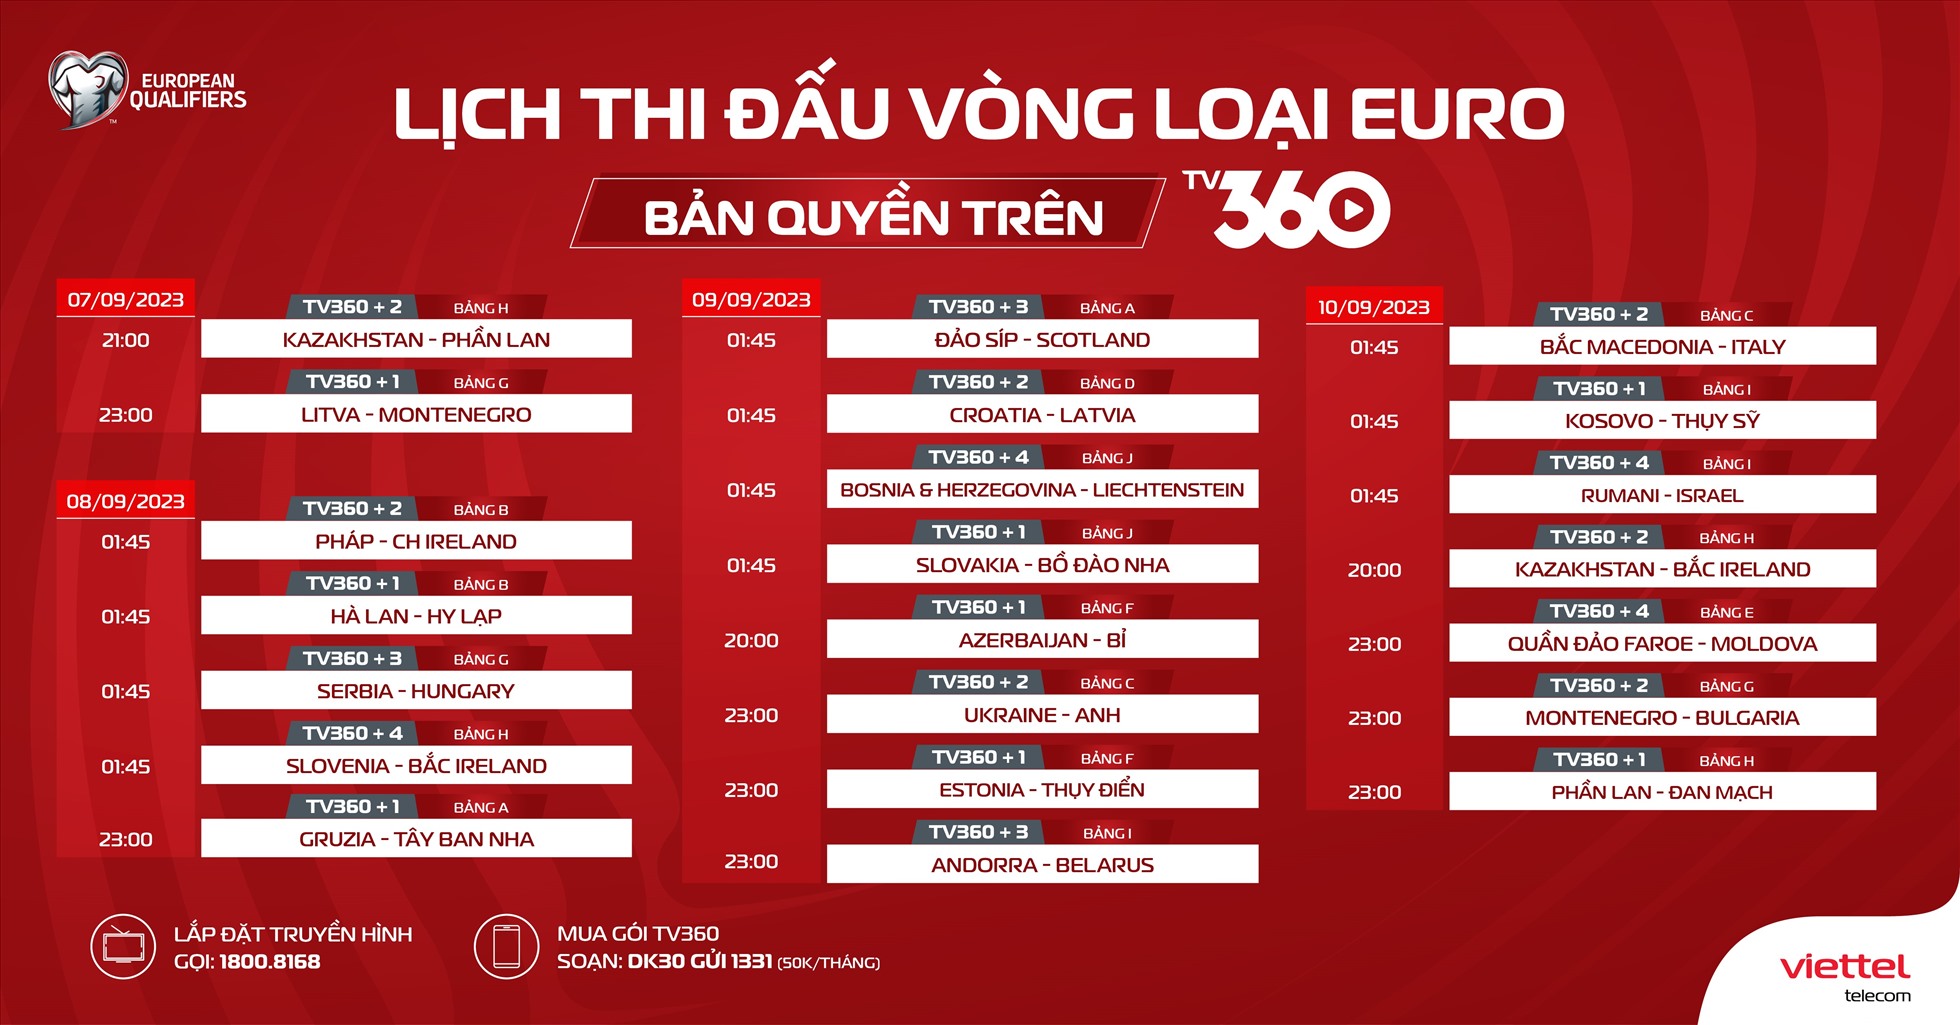 Lịch thi đấu vòng loại Euro 2024 tháng 9 trên TV360